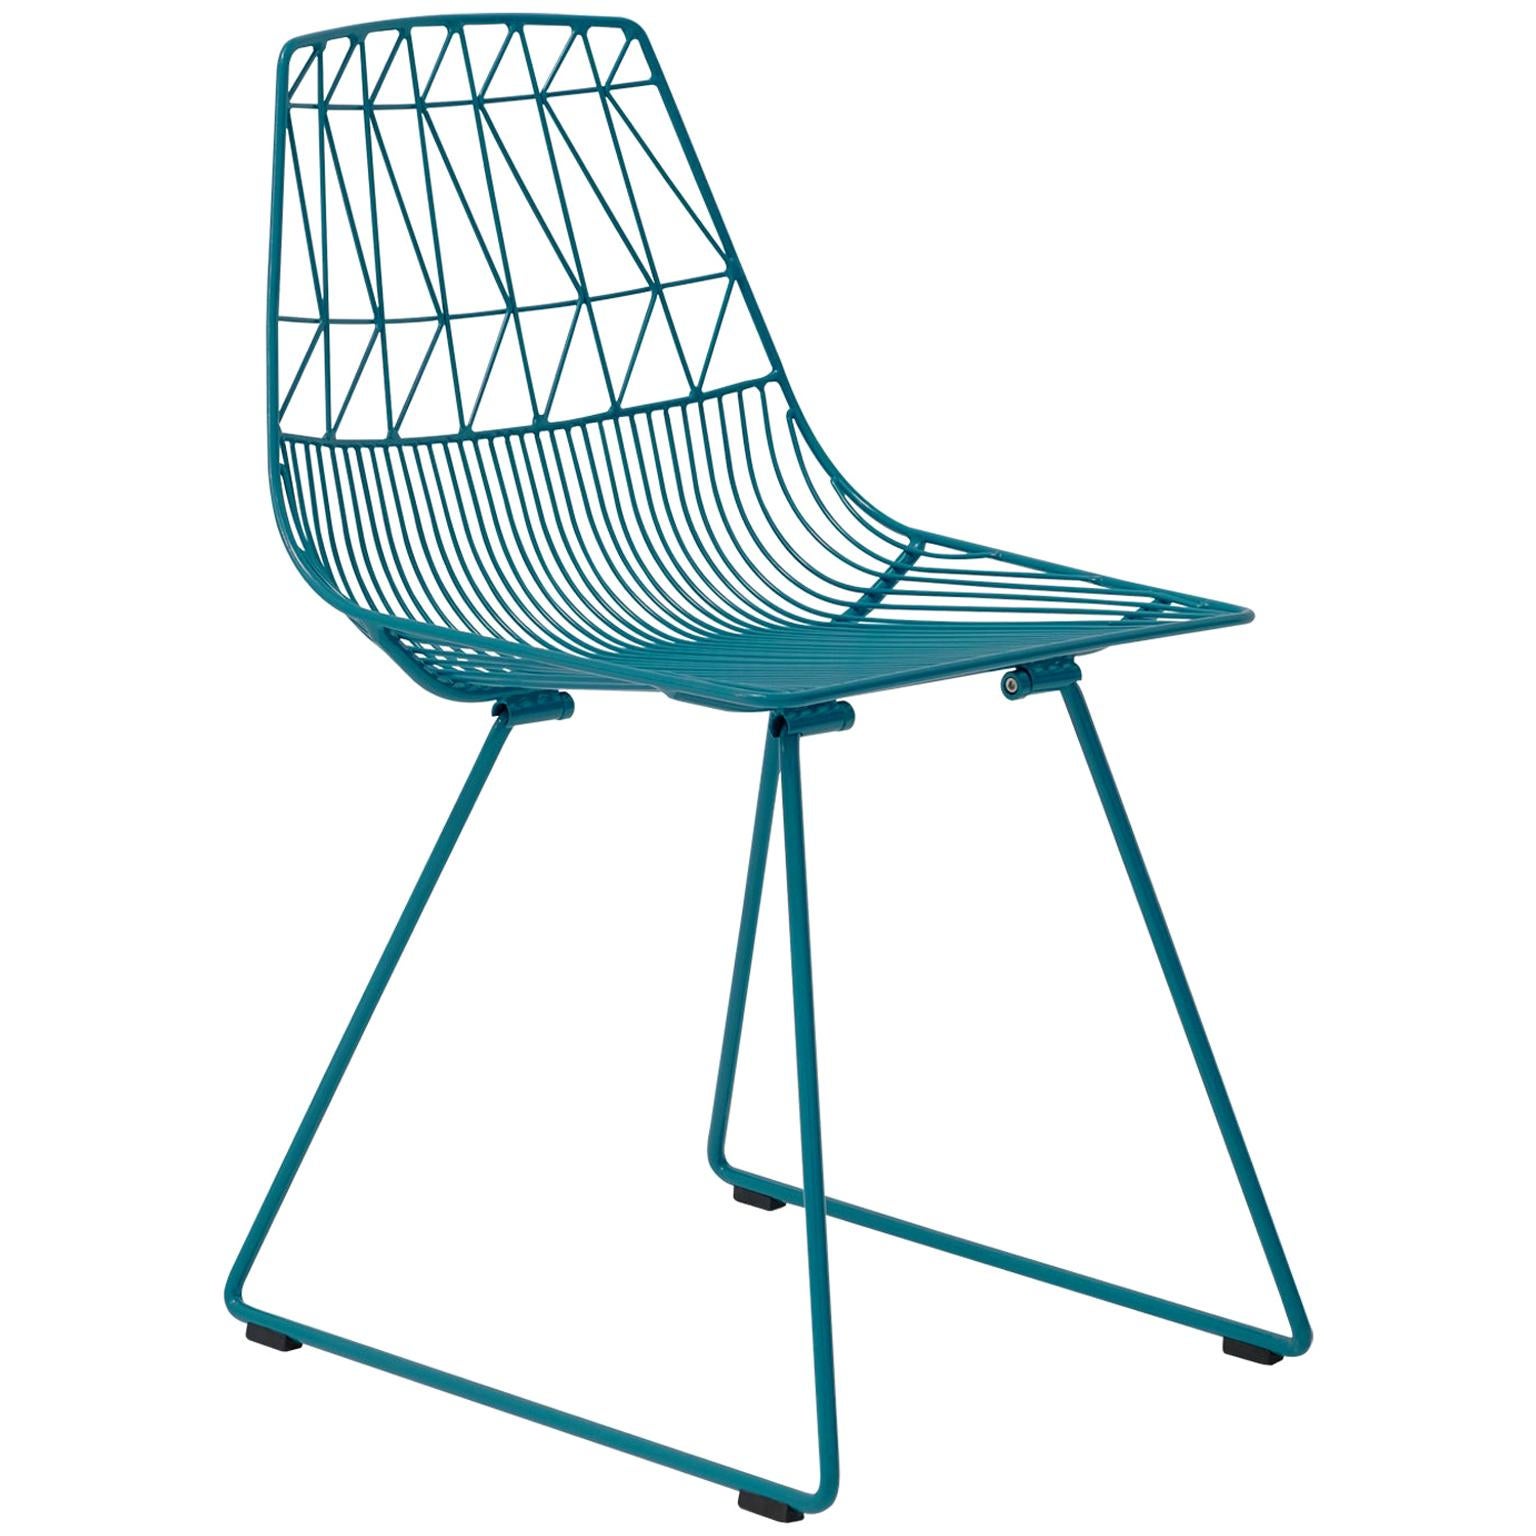 Chaise moderne du milieu du siècle dernier, minimaliste en fil métallique, la chaise Lucy en bleu paon